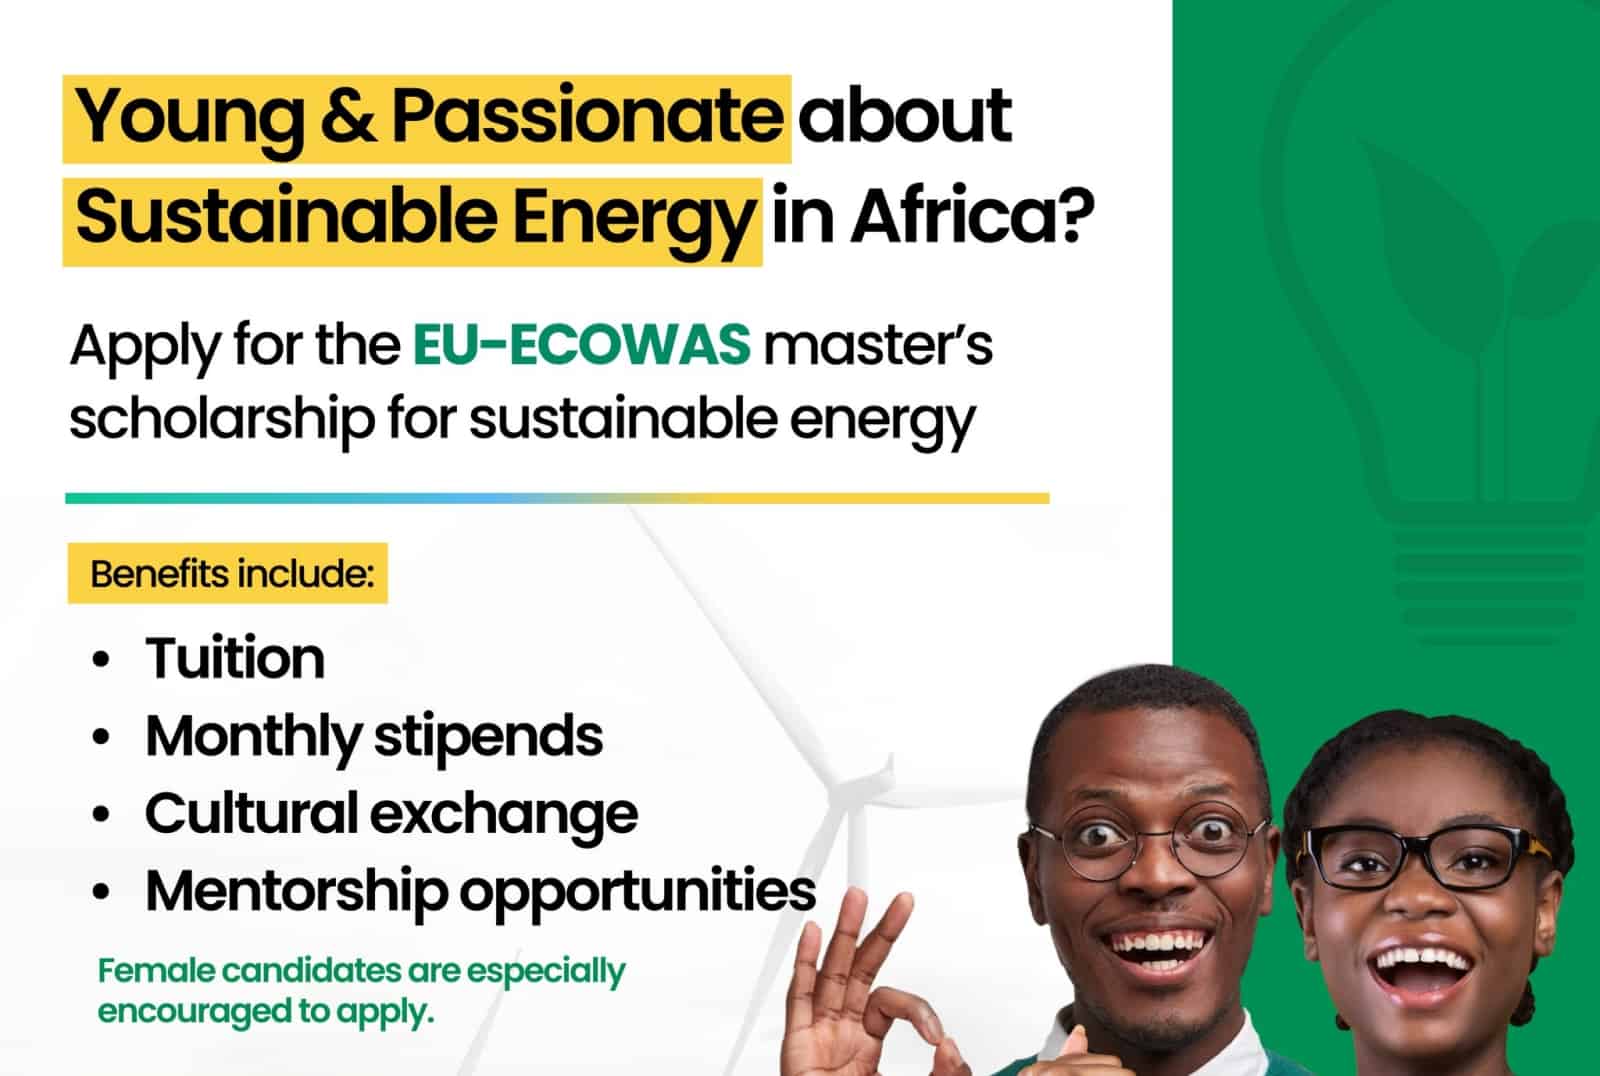 EU-ECOWAS Scholarships Programme on Sustainable Energy